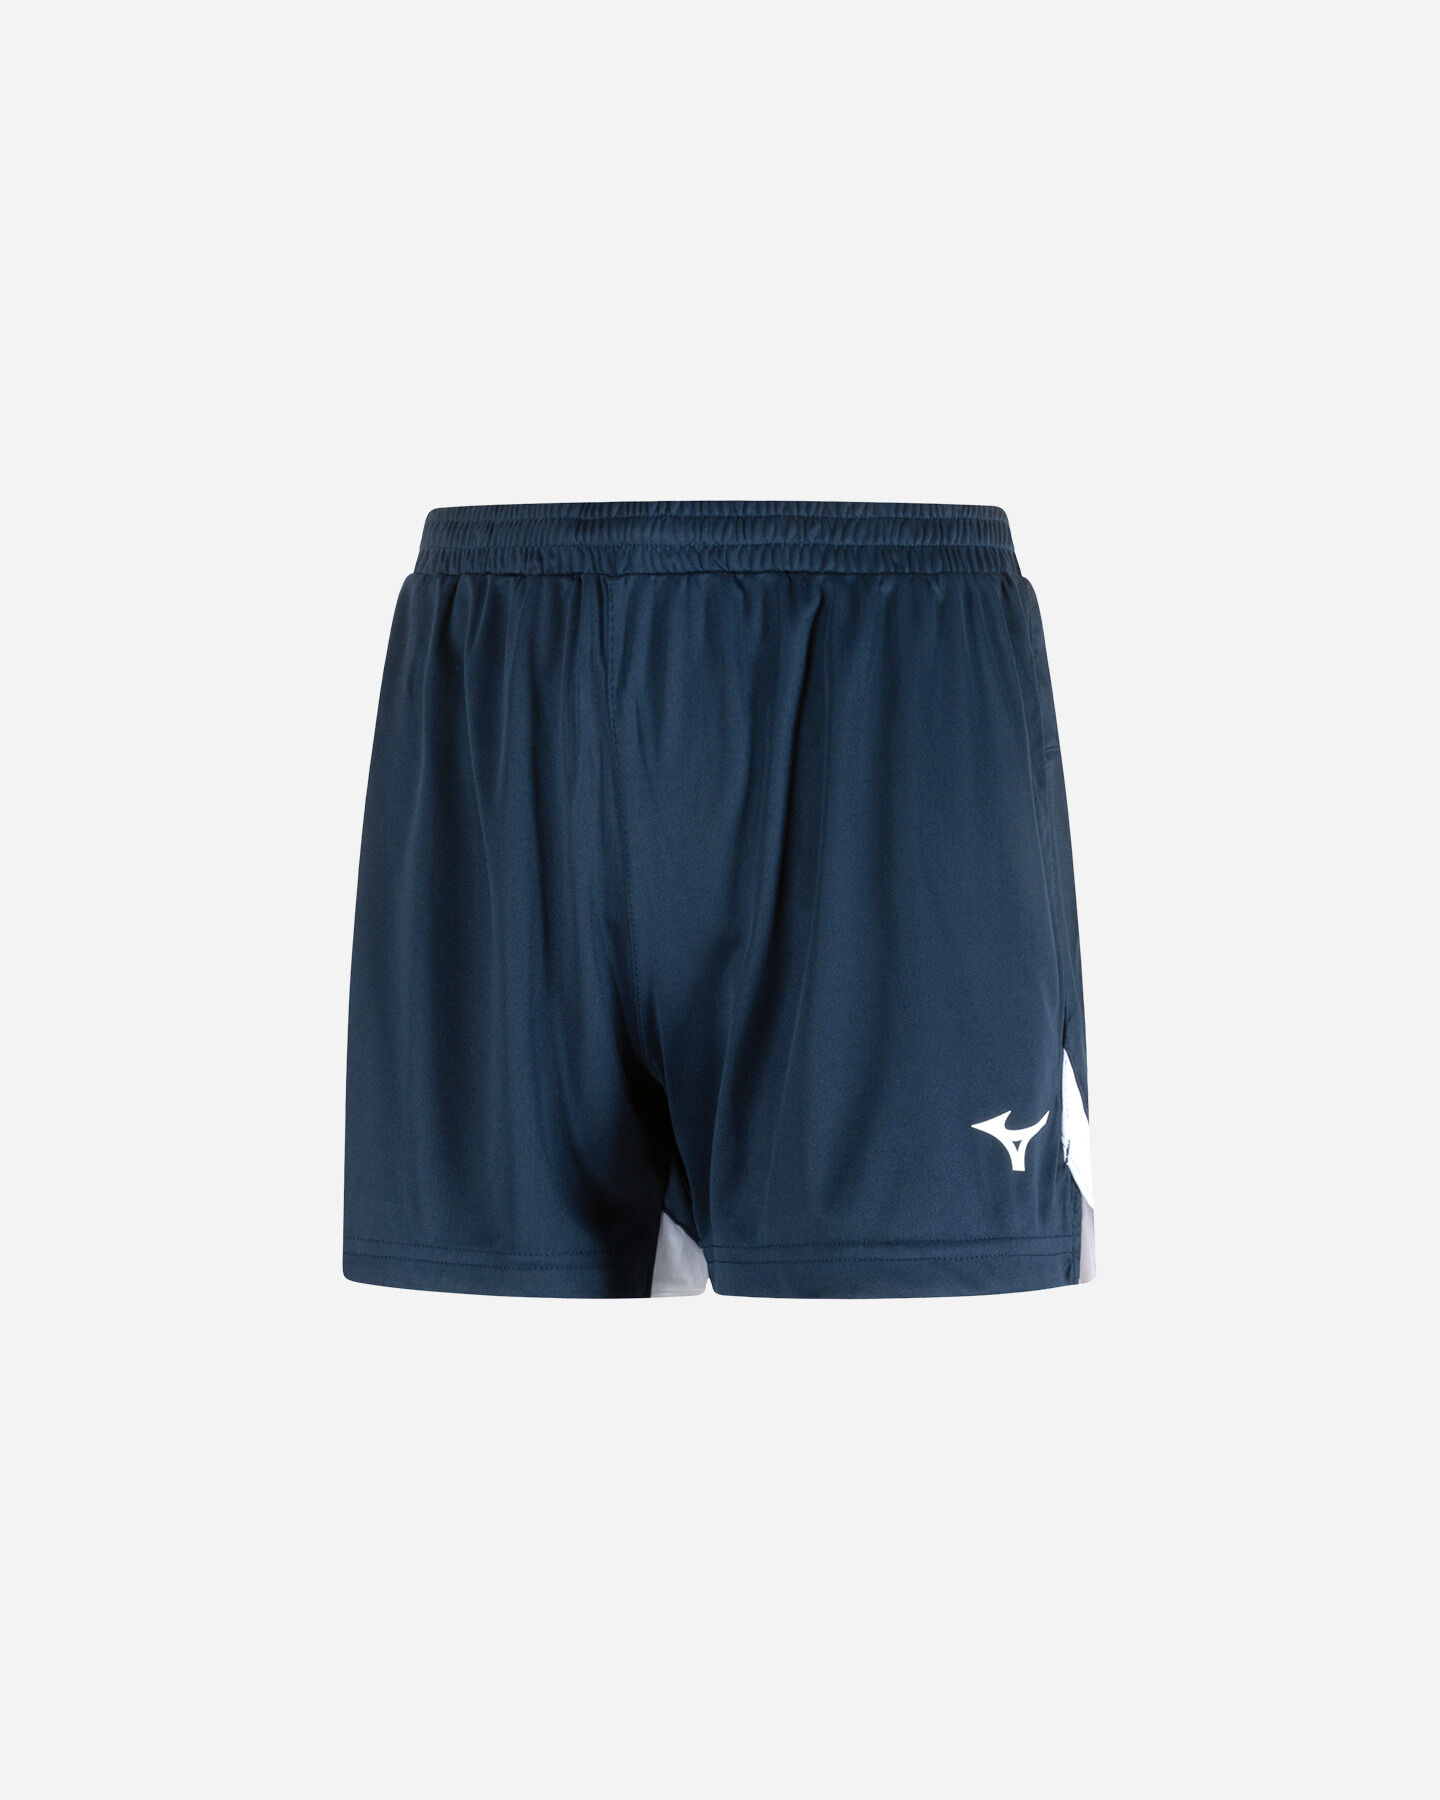  Pantaloncini volley MIZUNO PREMIUM HANDBALL M S5507027|14|XS scatto 0